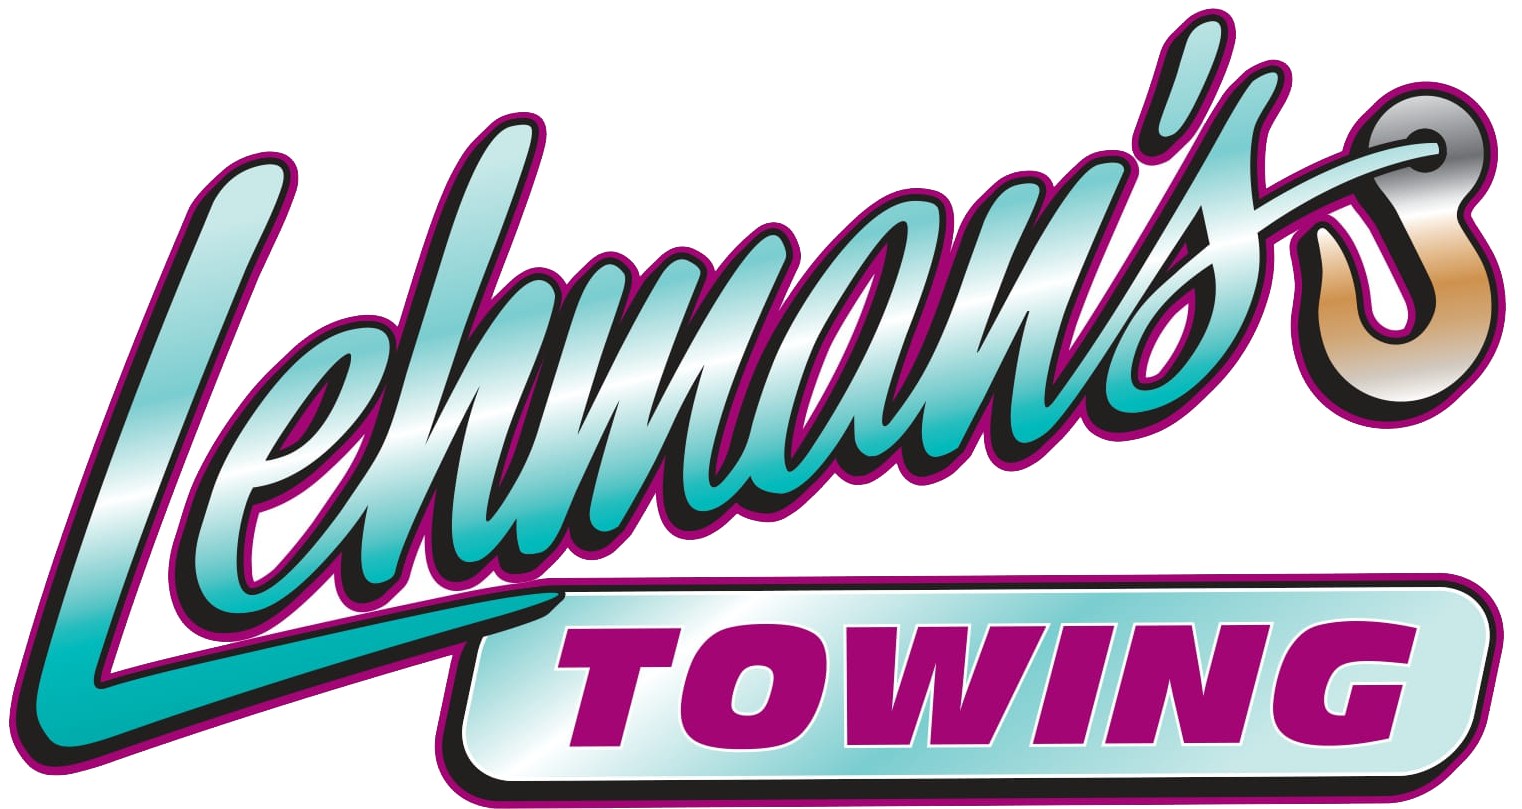 Lehman's Towing - Logo